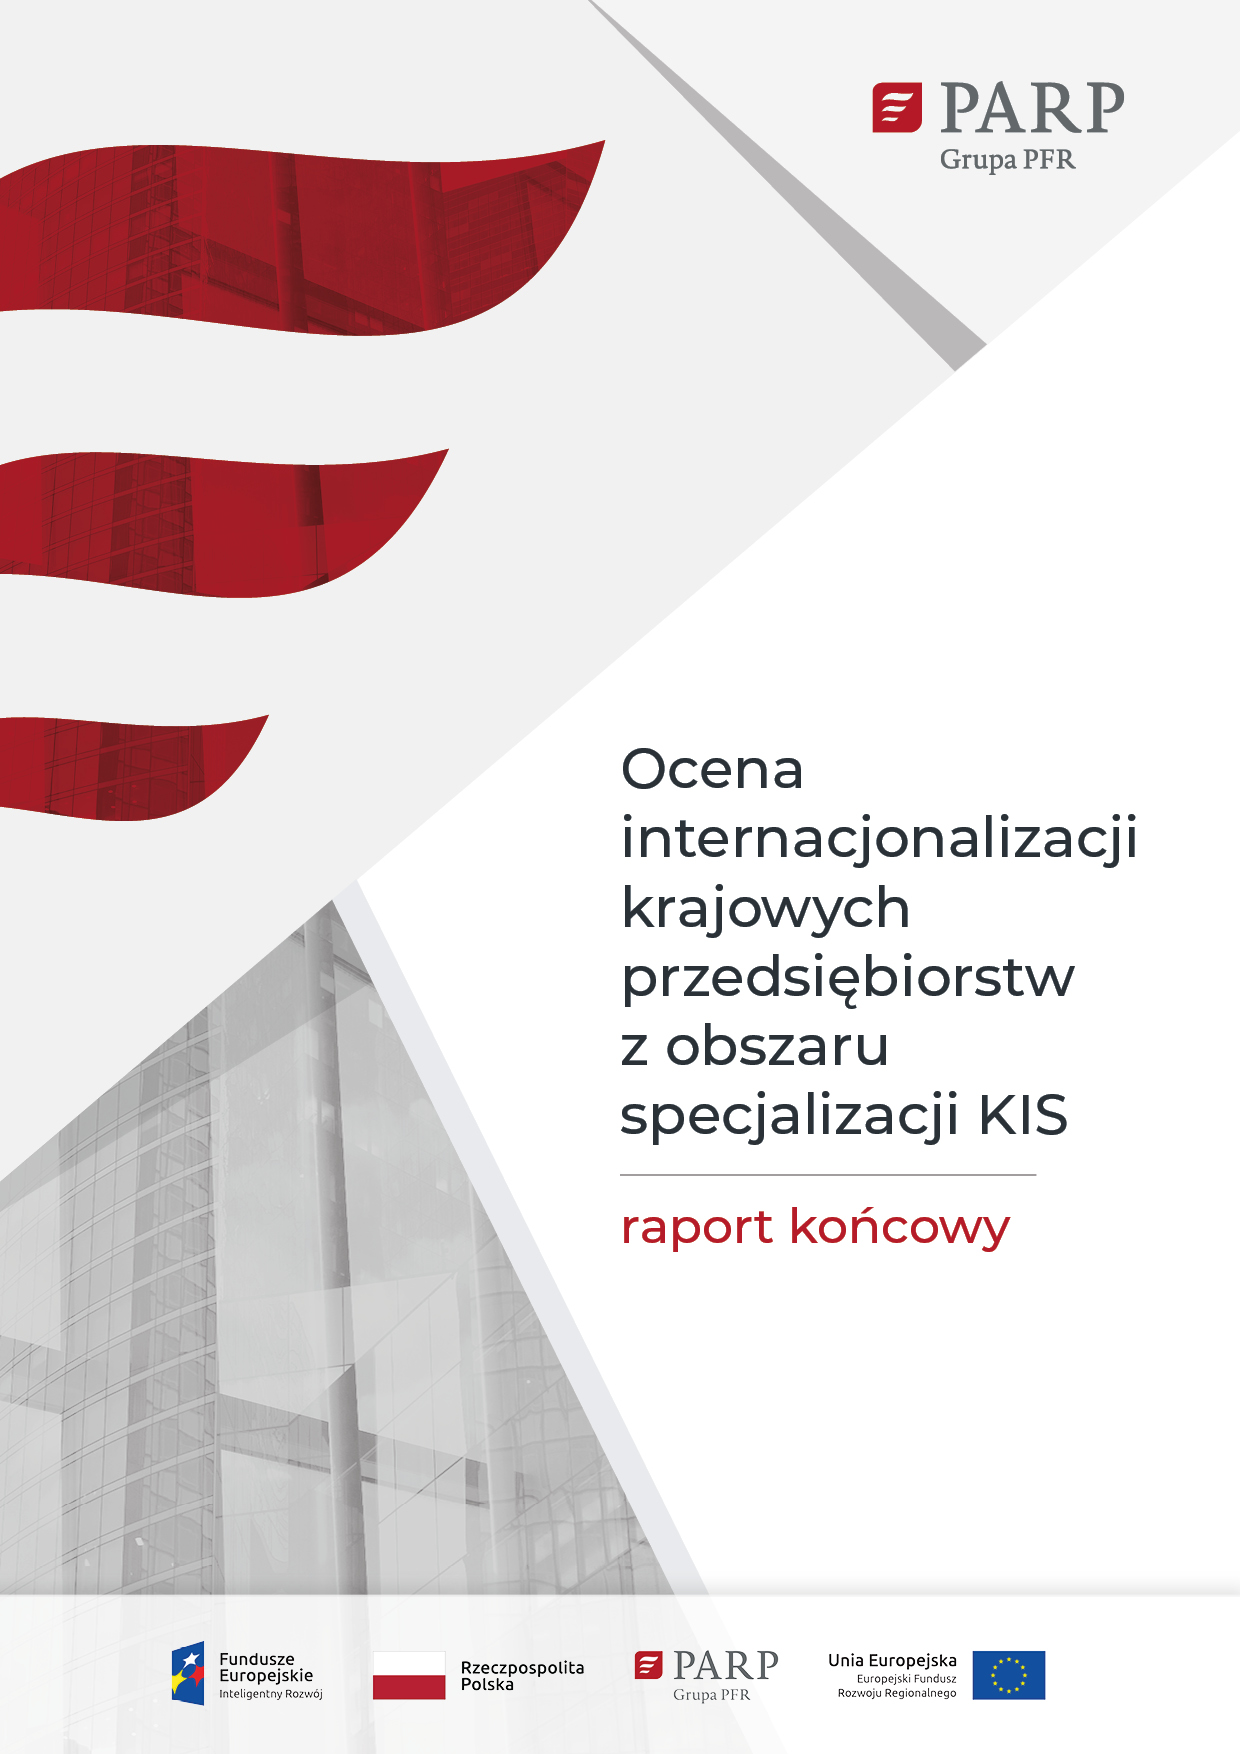 Ocena internacjonalizacji krajowych przedsiębiorstw z obszaru specjalizacji KIS - raport końcowy